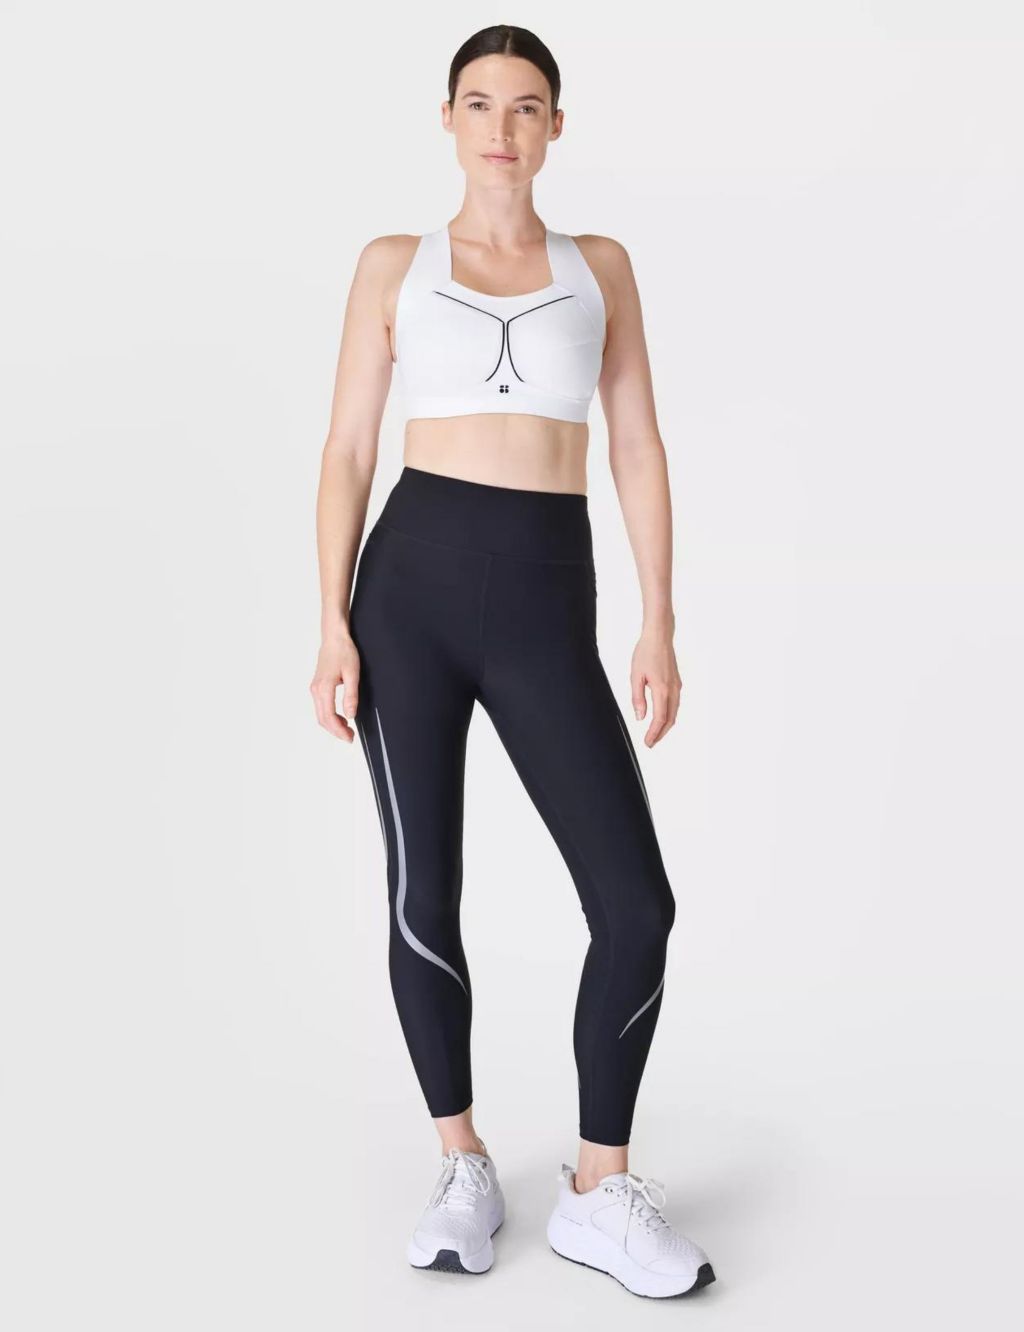 Sweaty Betty zero gravity 7/8 running leggings